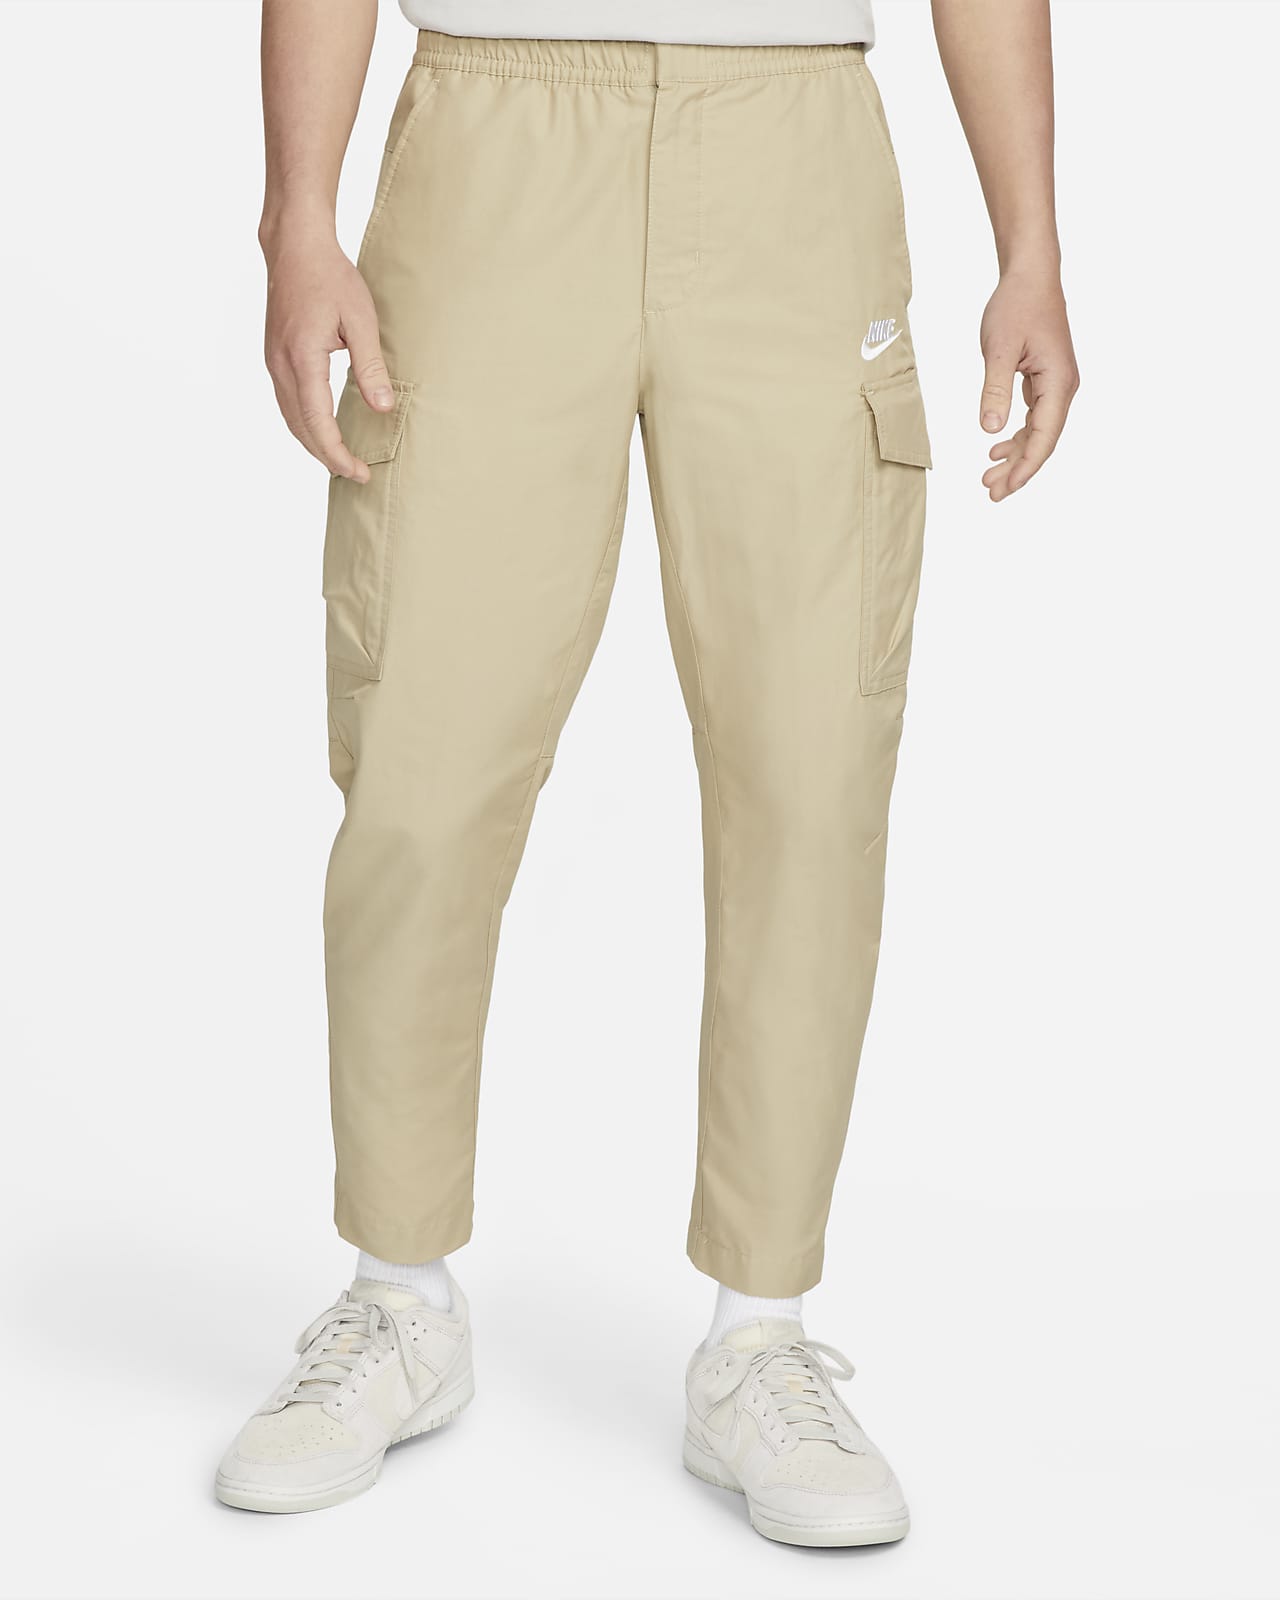 Nike 22FW Sportswear Repeat SW Fleece Cargo Pant Men's Trousers Black  DX2030-010 | eBay